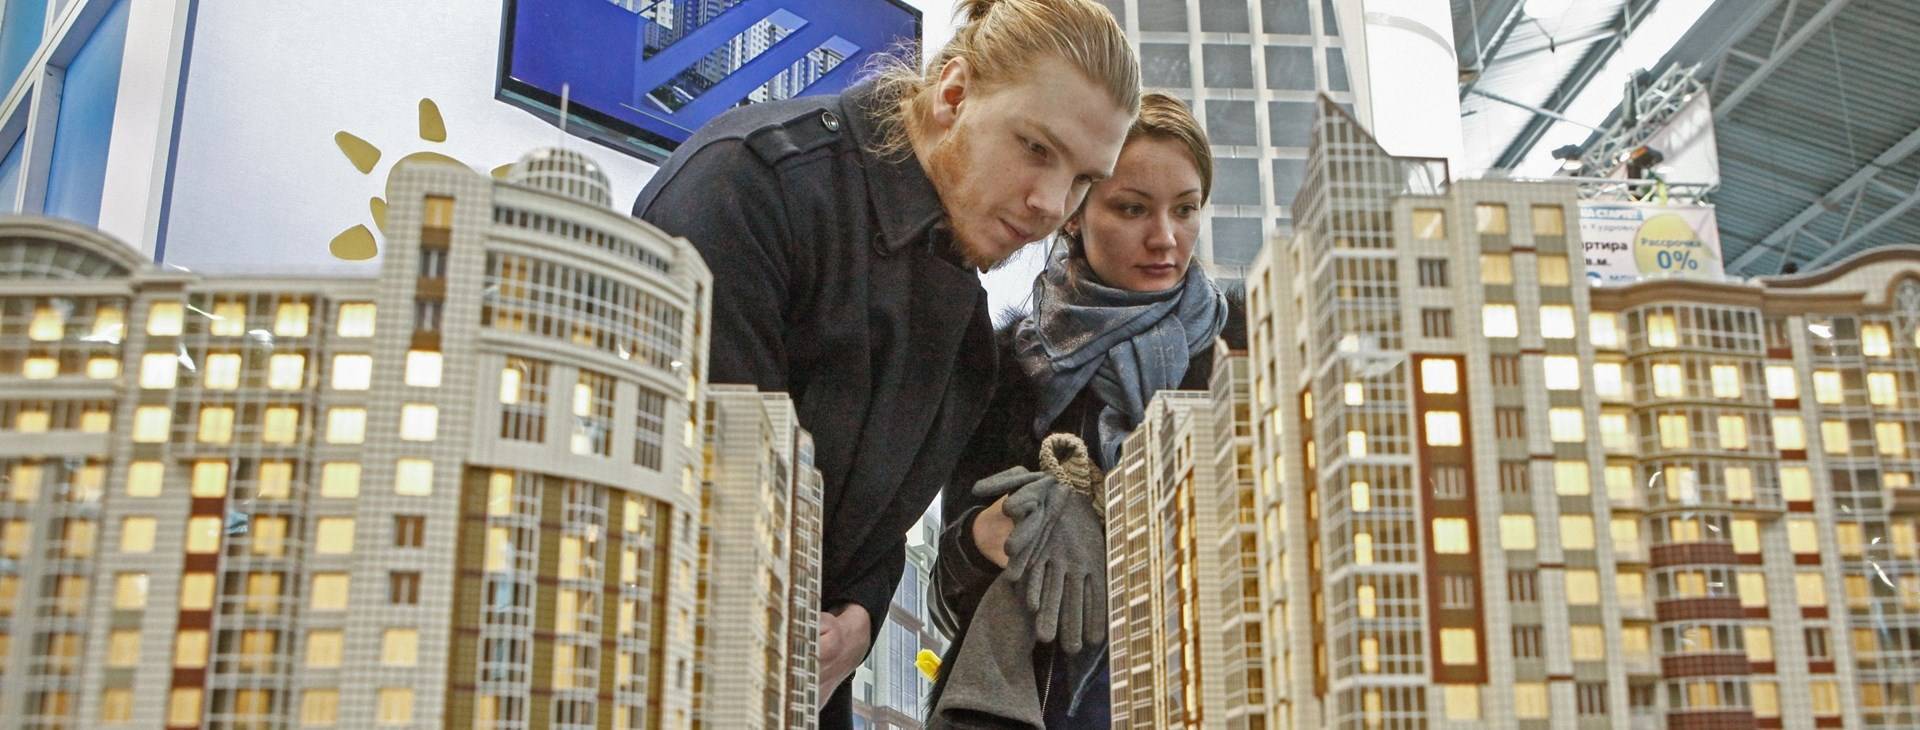 Сочи в этот список не попал: 10 городов россии, где будет выгодно покупать жилье